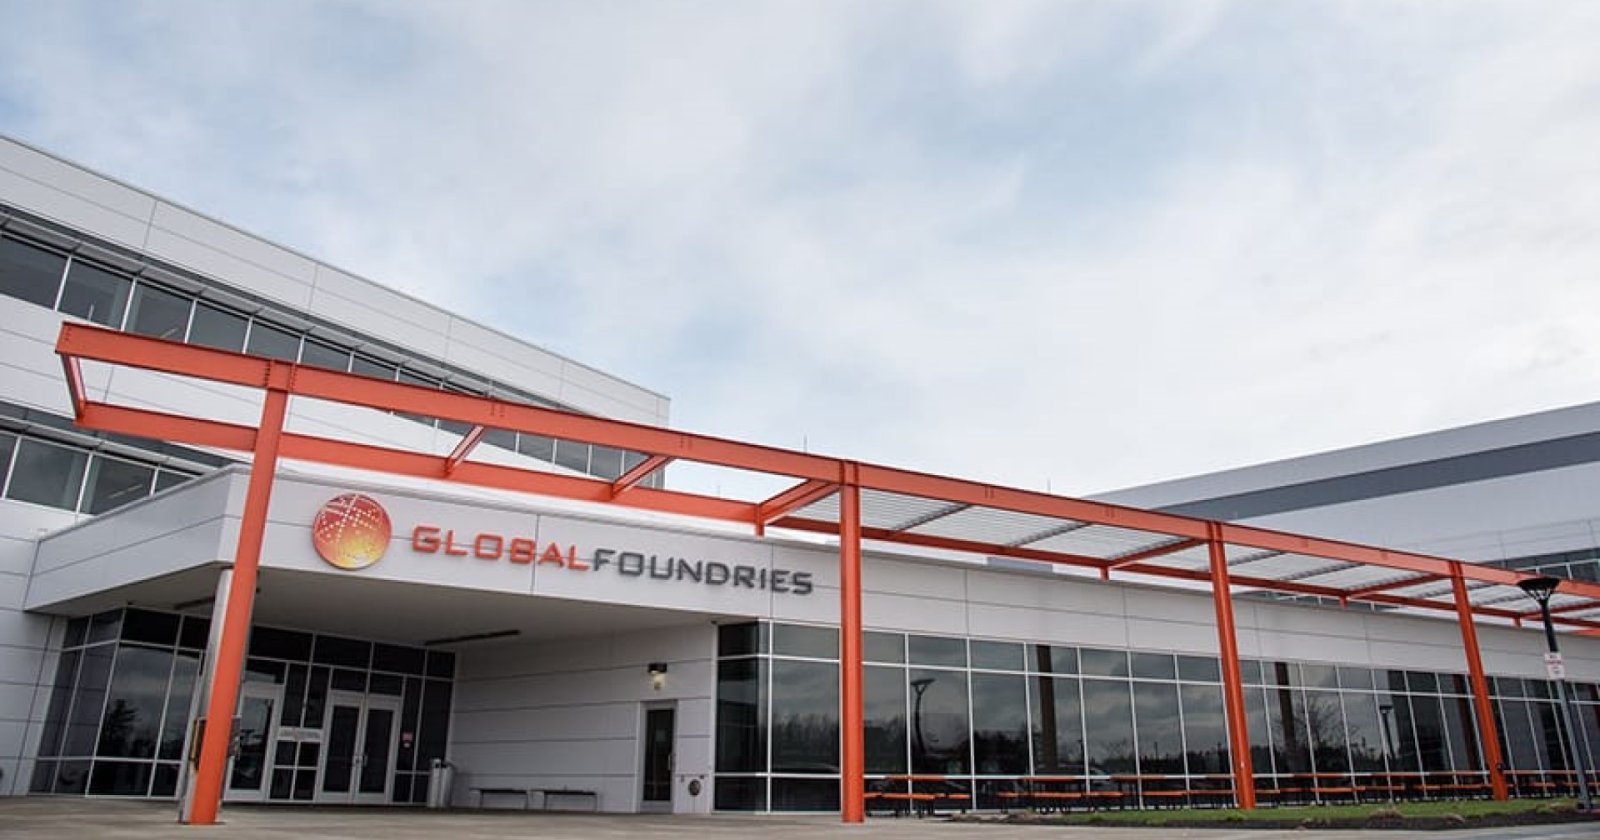 GlobalFoundries เปิดโรงงานผลิตชิปมูลค่า 140,000 ล้านในสิงคโปร์